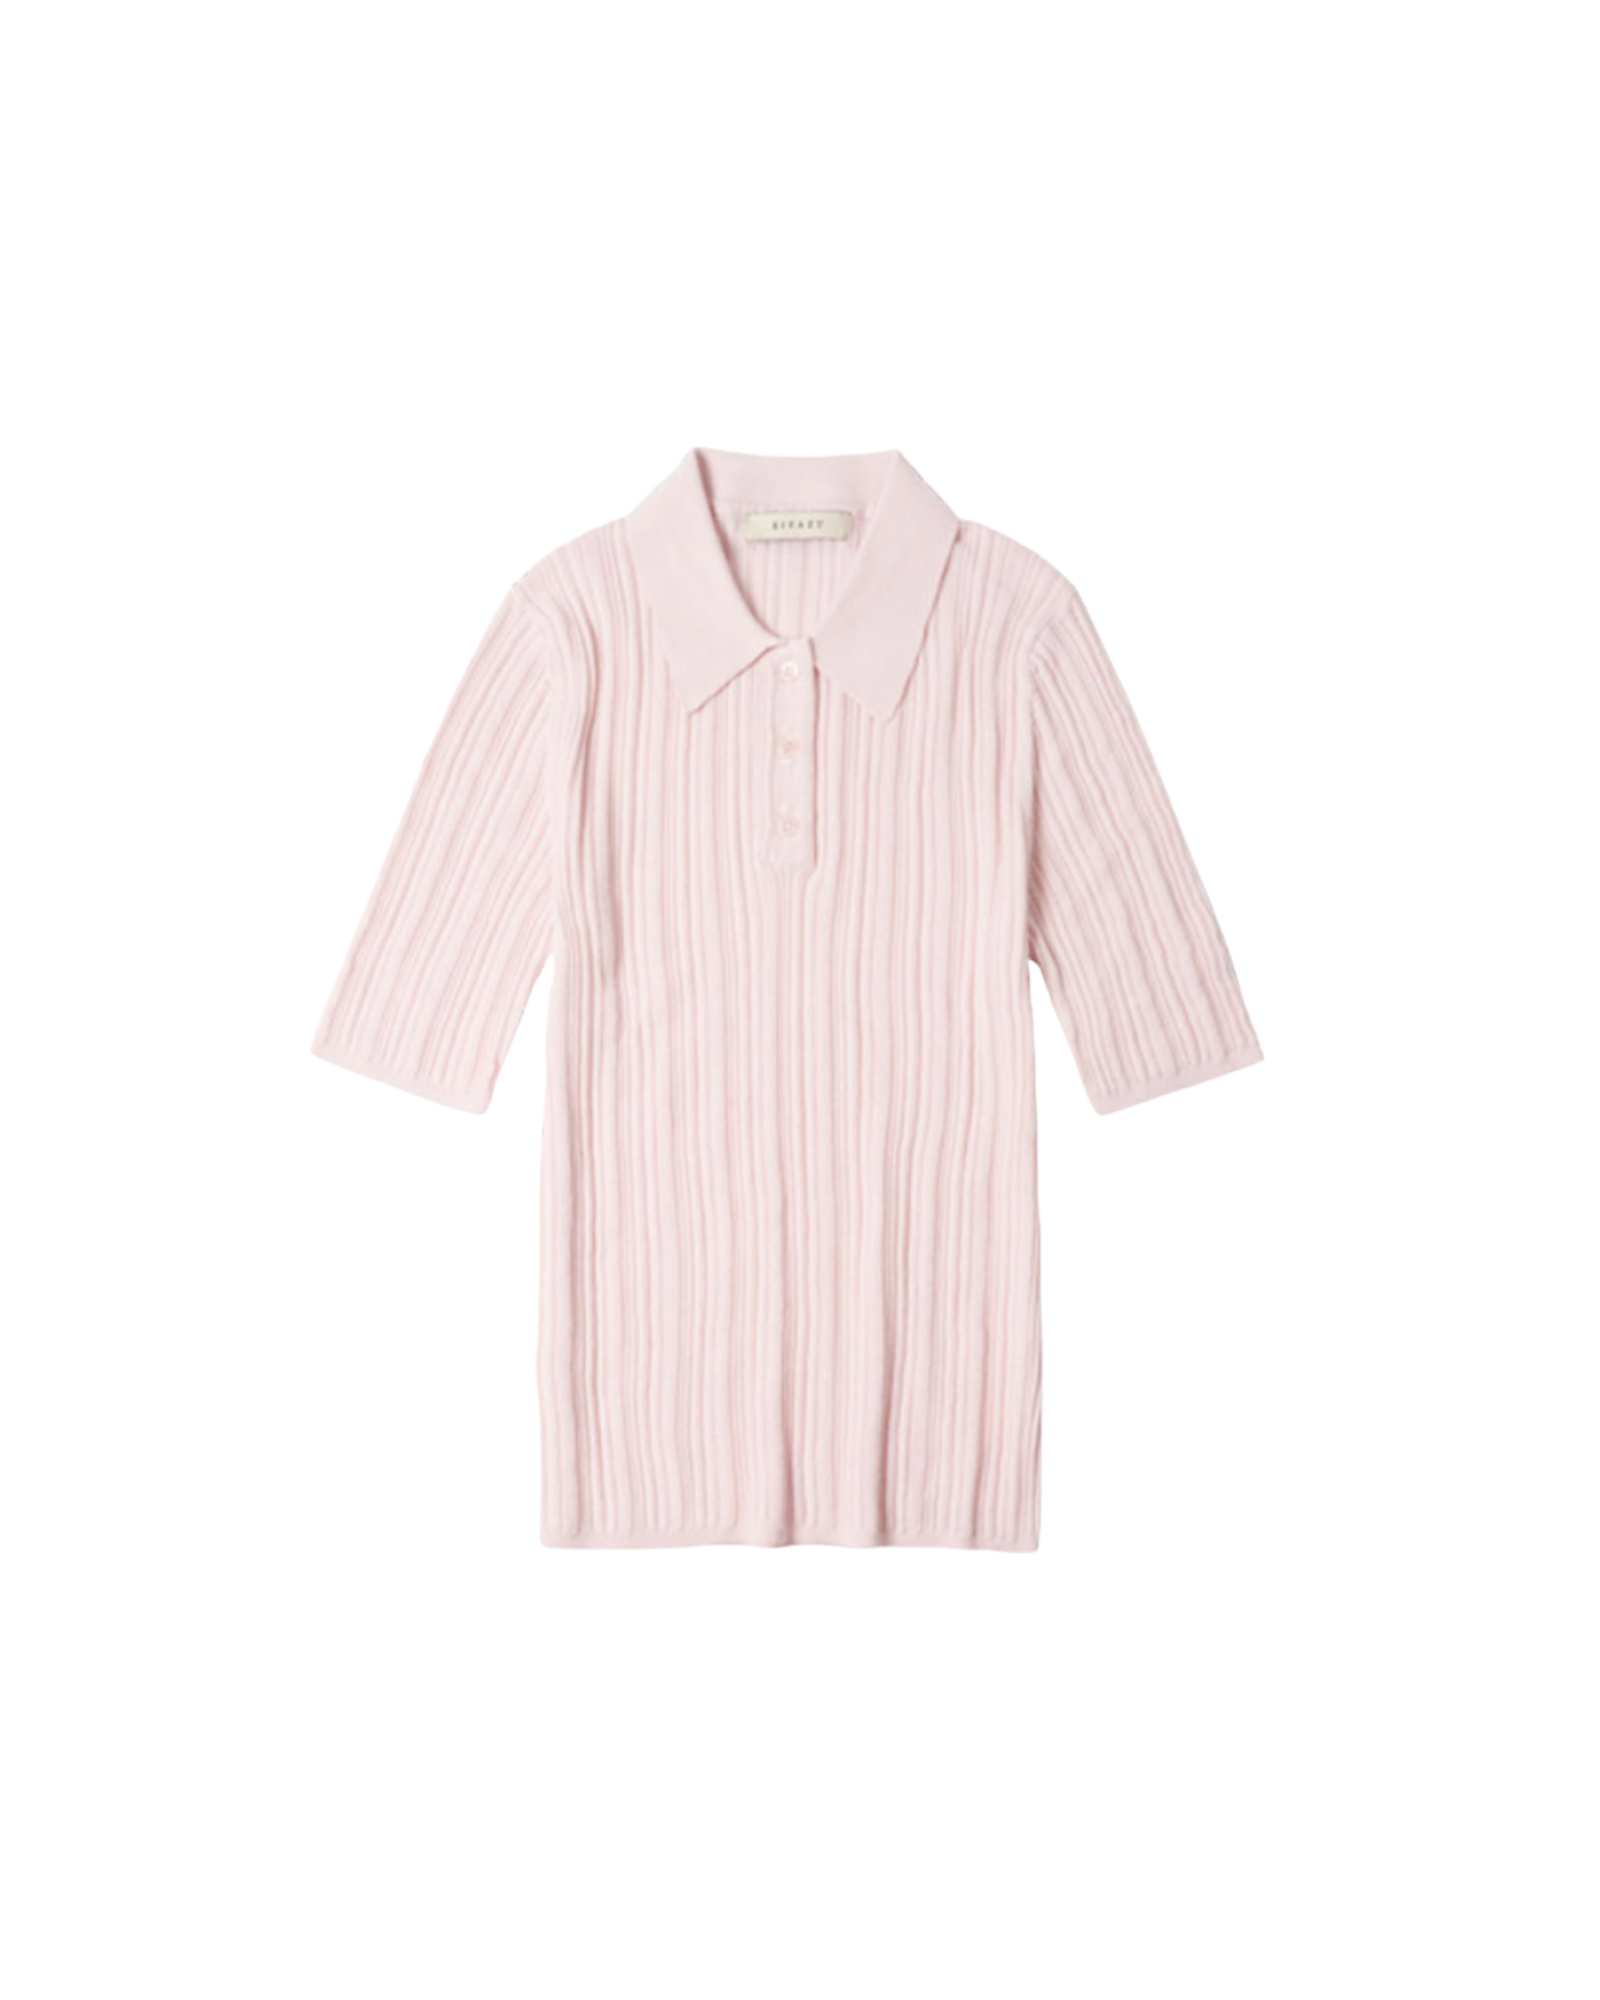 細領粉紅色羅紋針織衫